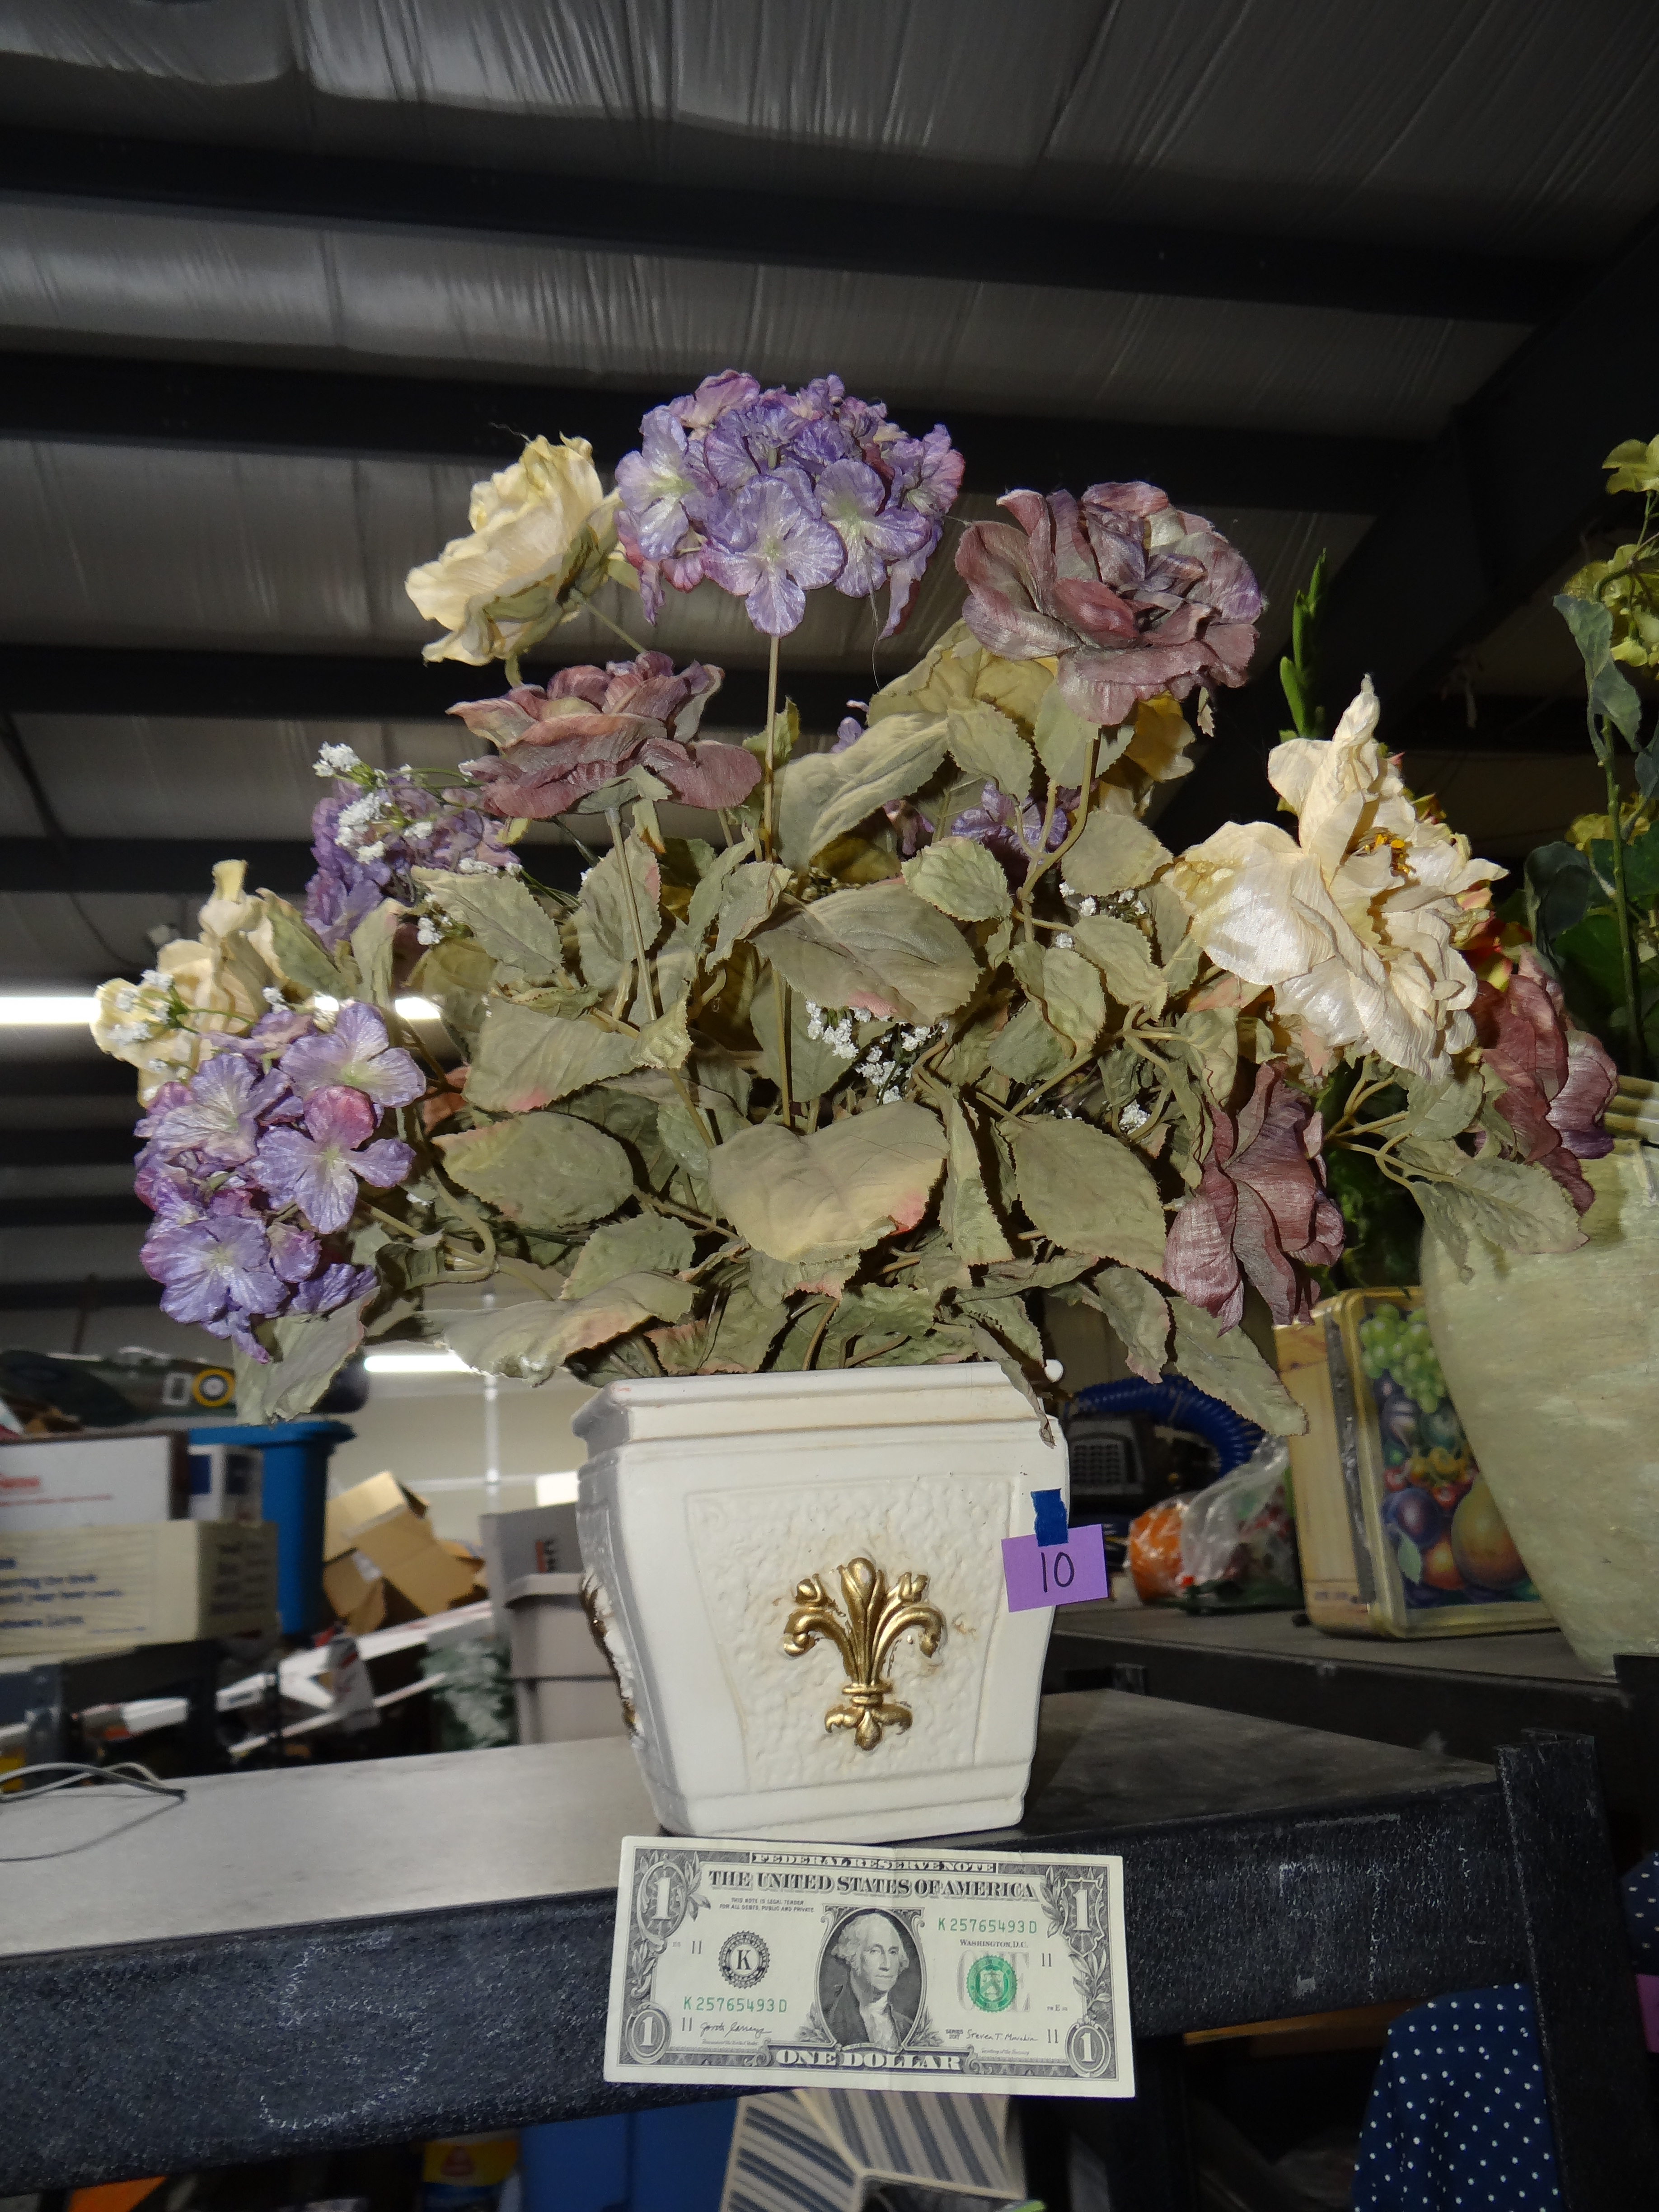 10-Large Vase with Fleur de Lis on Front & Artificial Flowers Inside